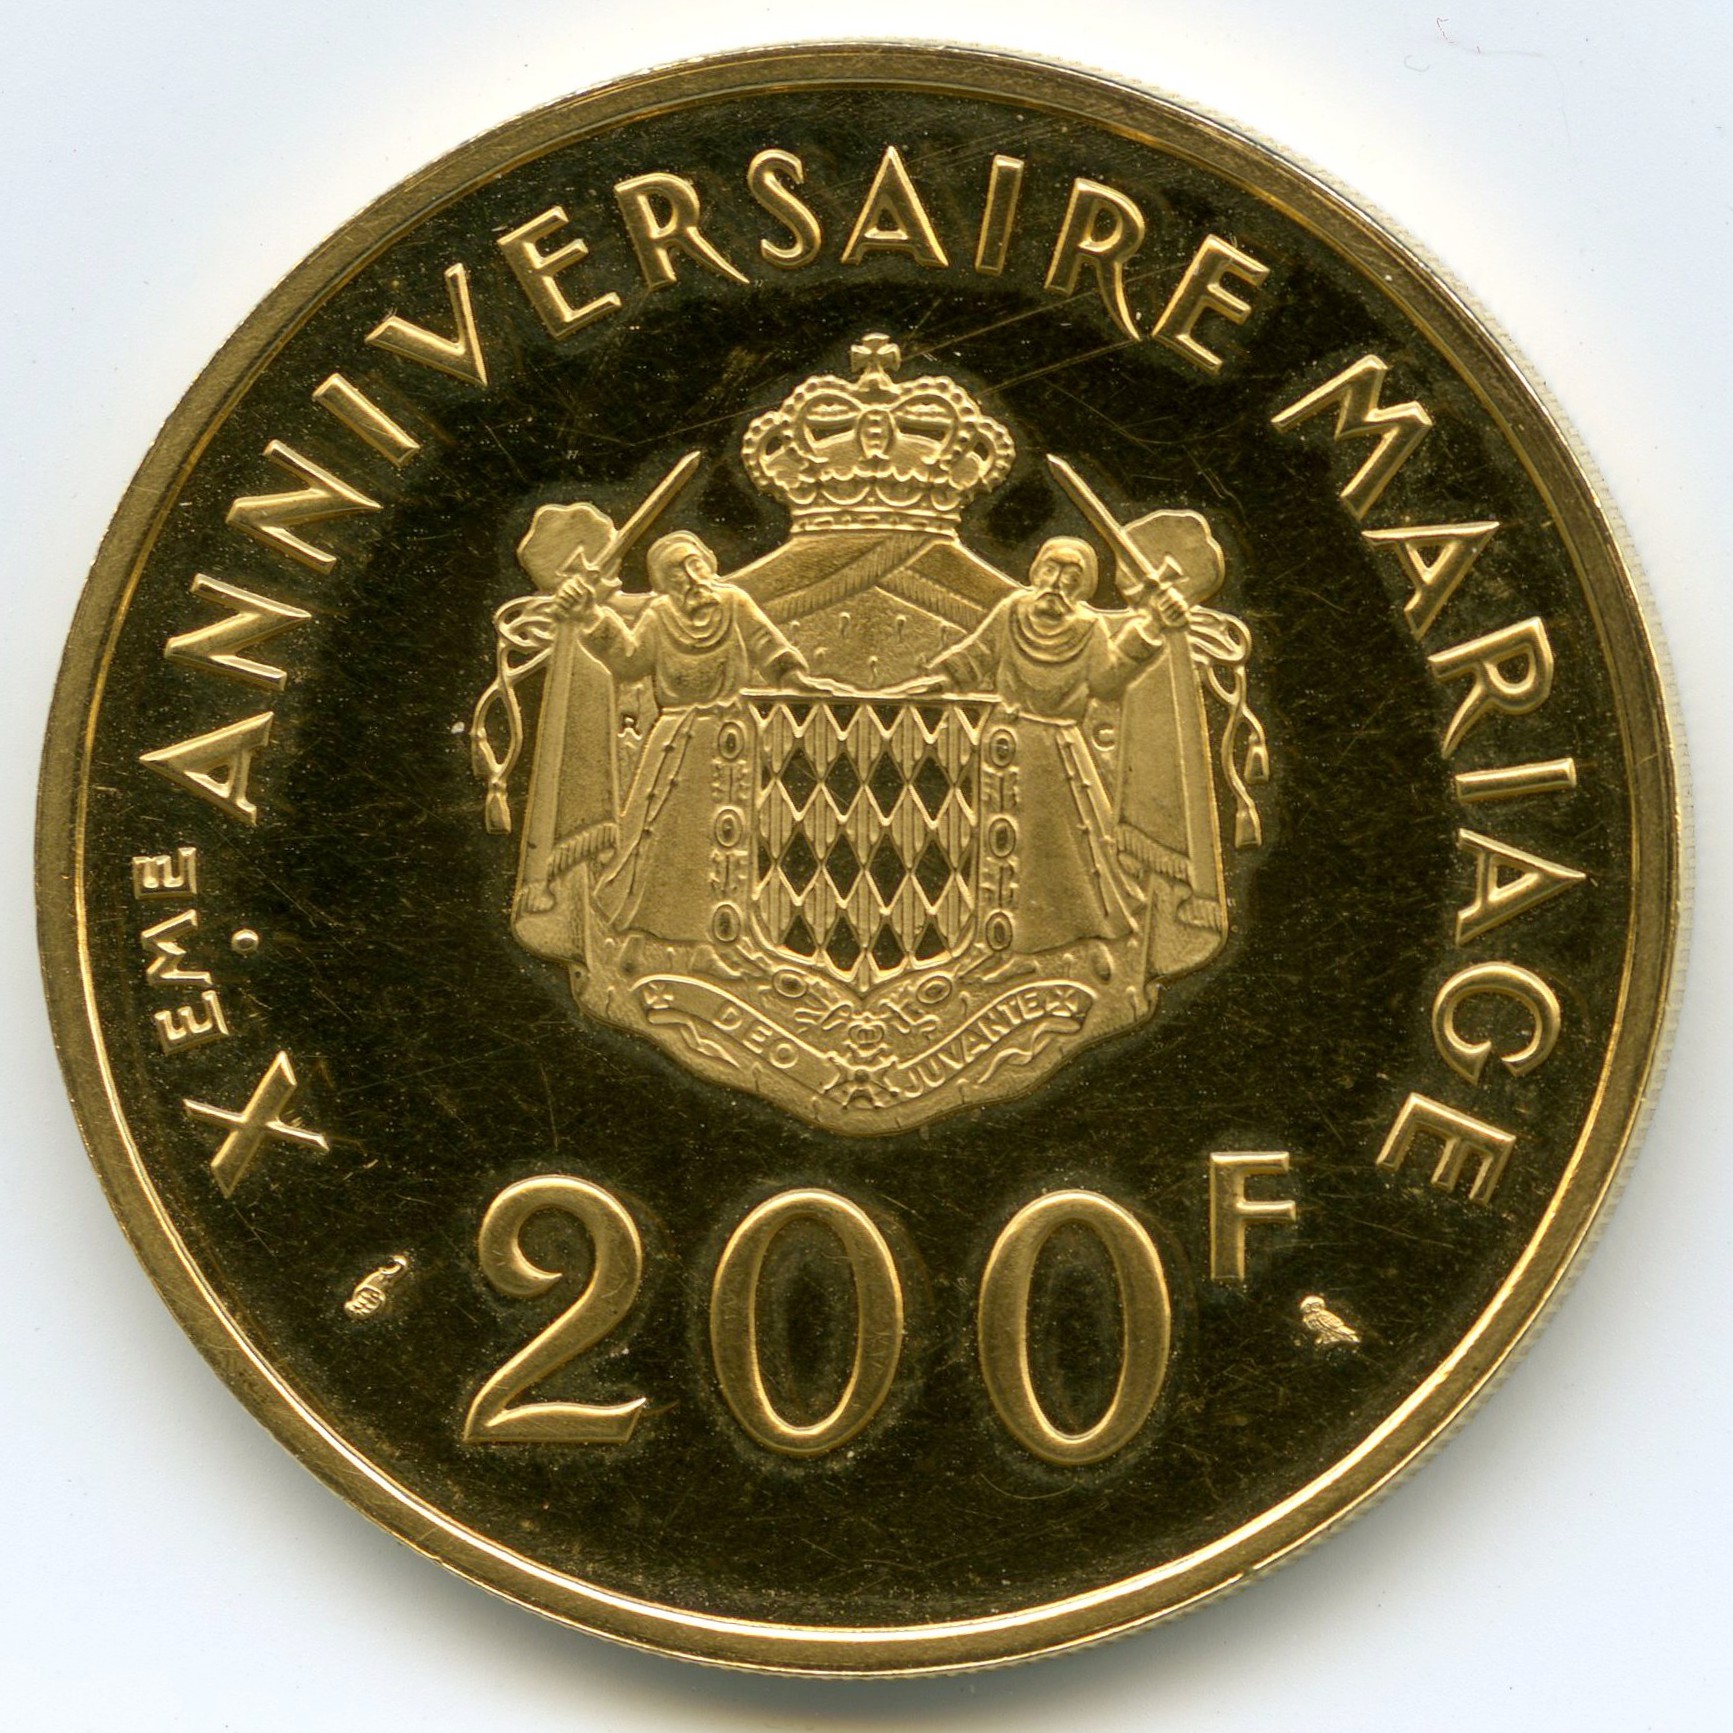 Monaco - 200 Francs - 1966 revers